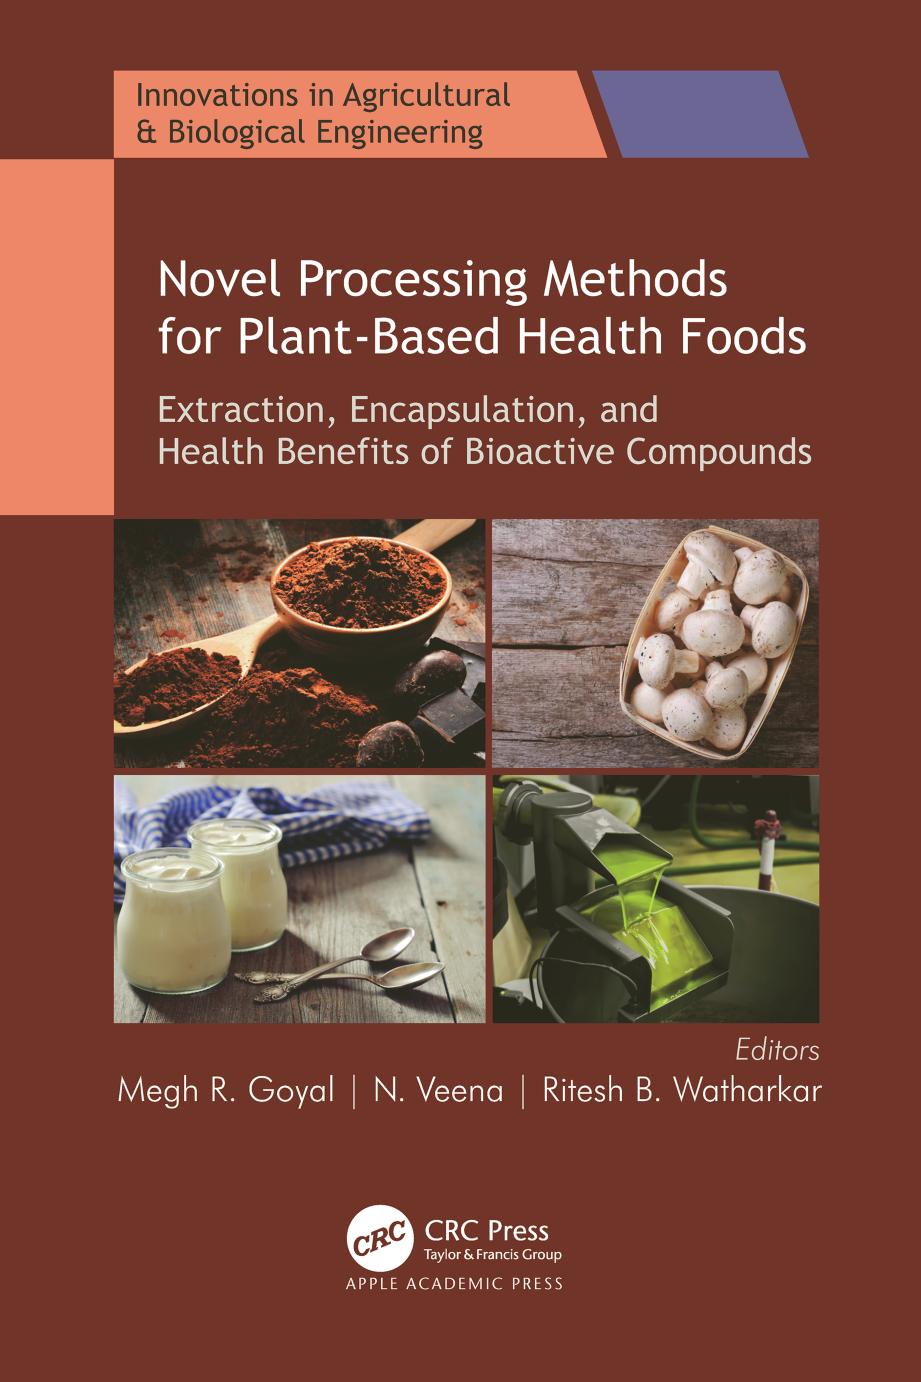 Novel Processing Methods Novel Processing Methods